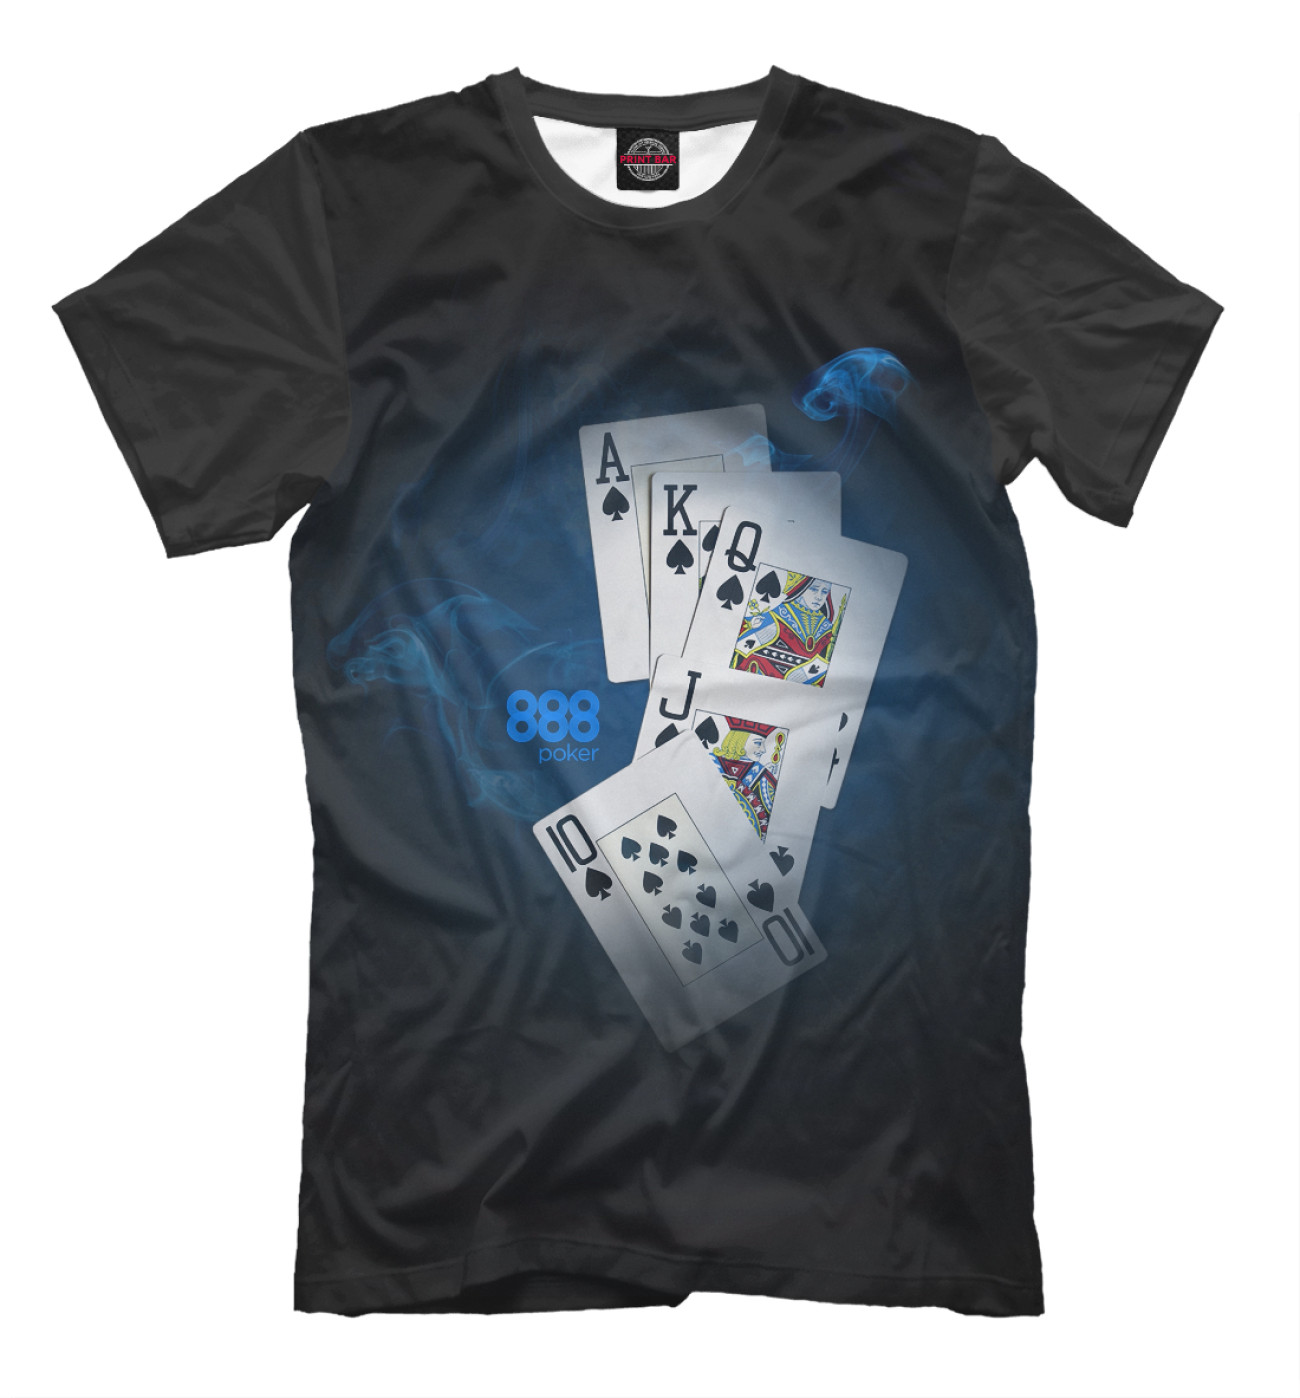 Мужская Футболка 888 покер, артикул: POK-800386-fut-2